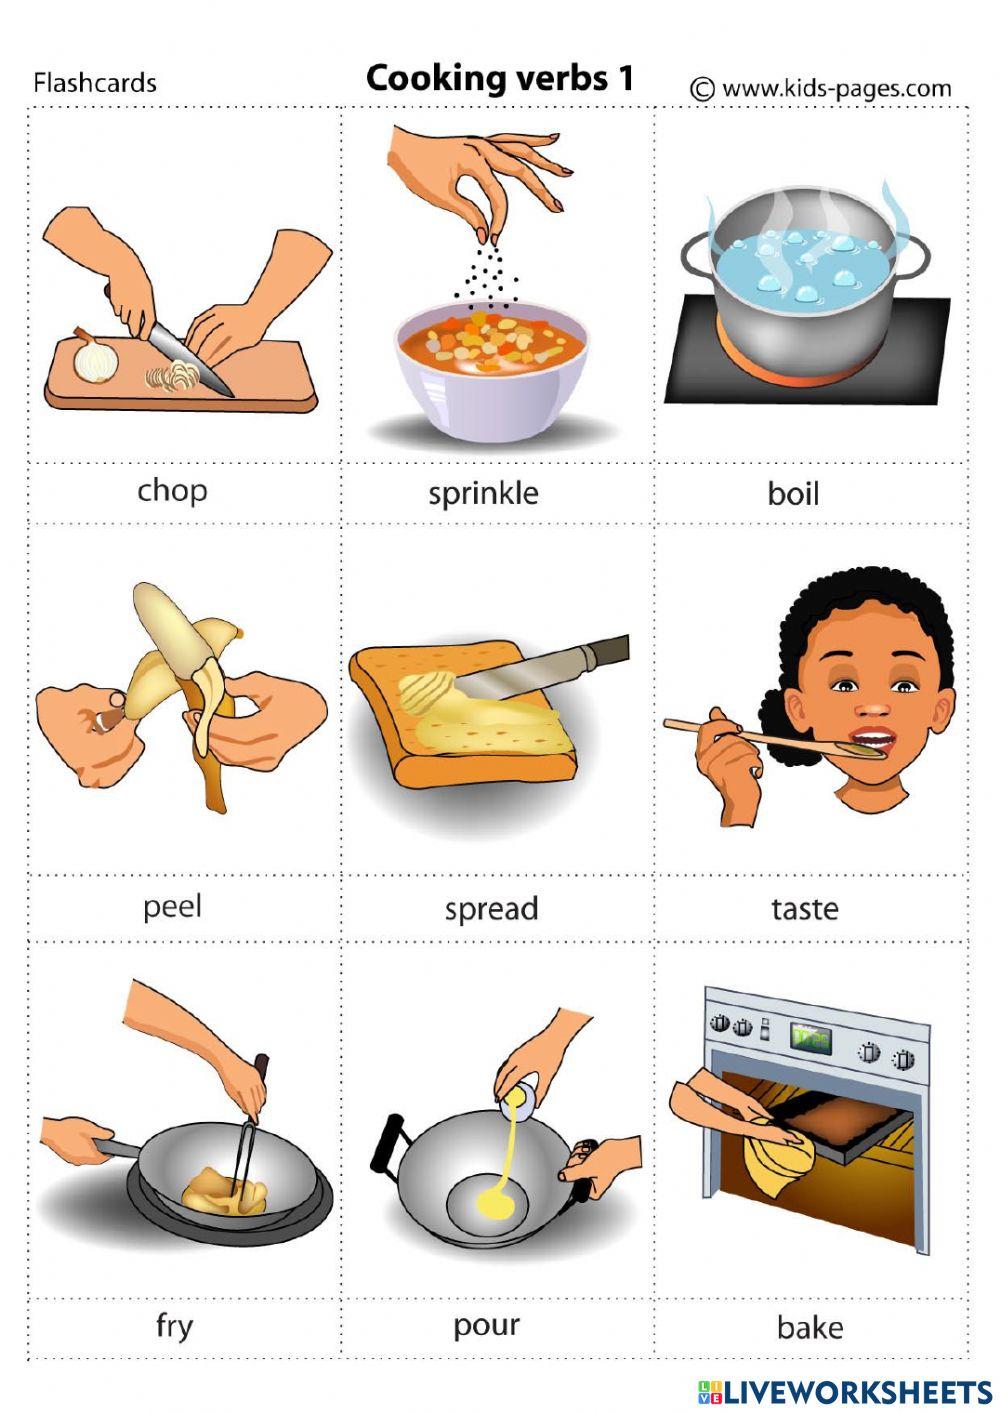 Cooking verbs английский. Глаголы готовки на английском. Приготовление еды на английском языке. Глаголы приготовления пищи на английском.